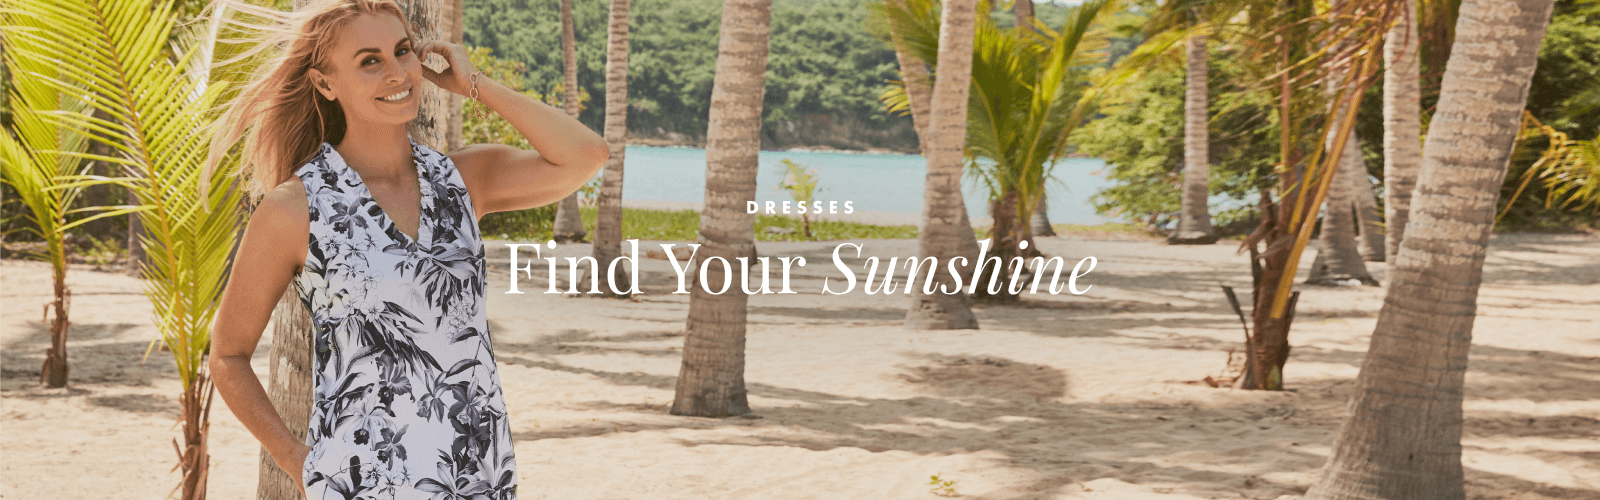 Dresses: Find Your Sunshine